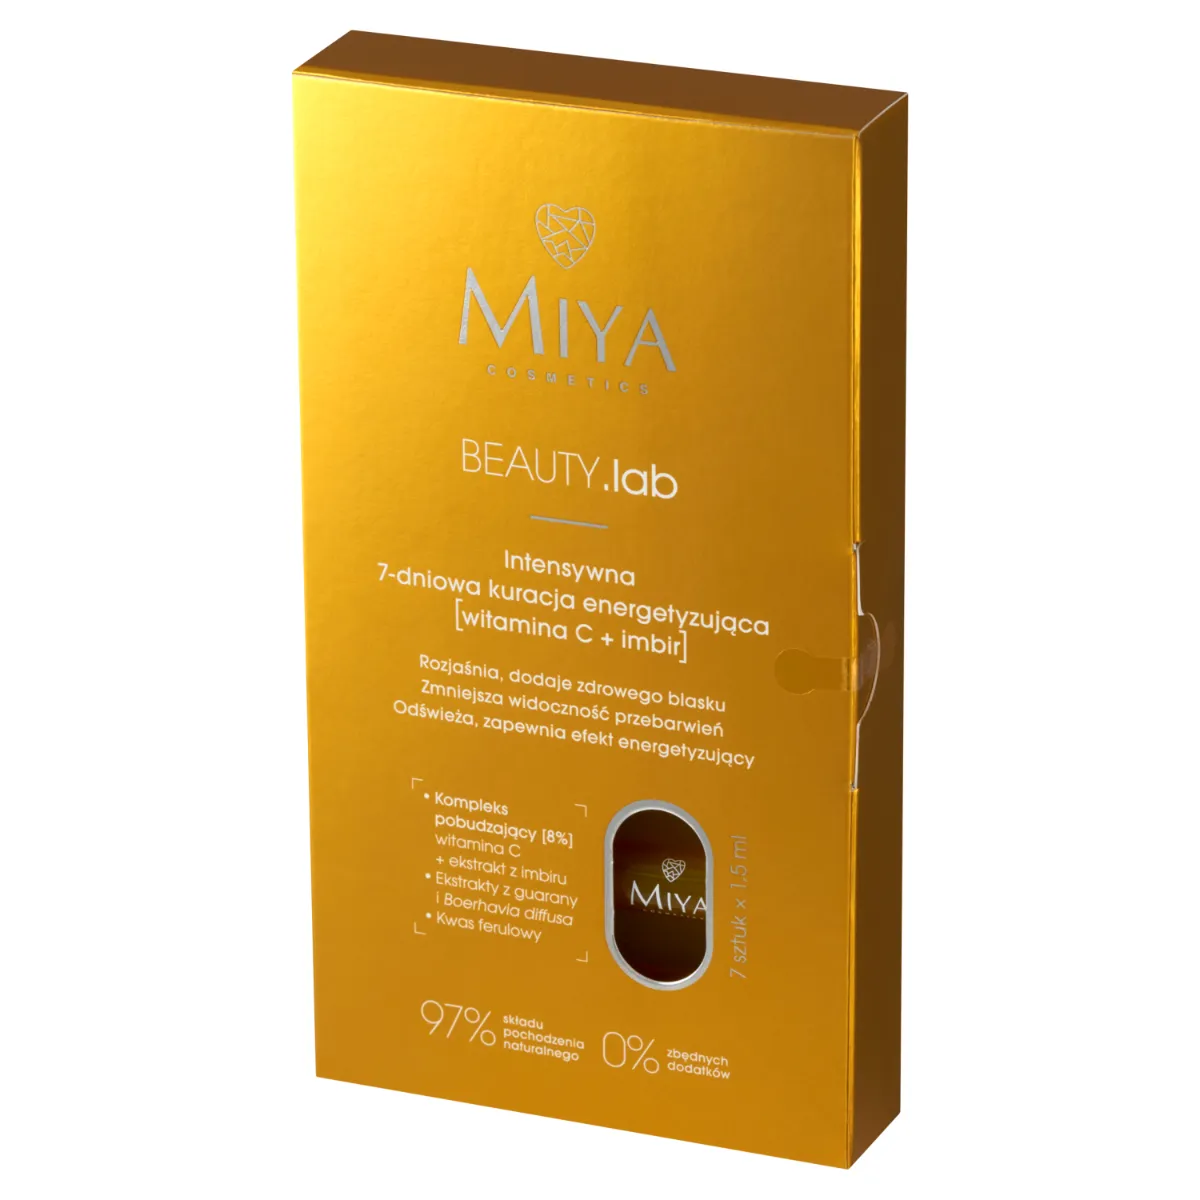 Miya Cosmetics Beauty.lab 7-dniowa kuracja energetyzująca, 7 x 1,5 ml 